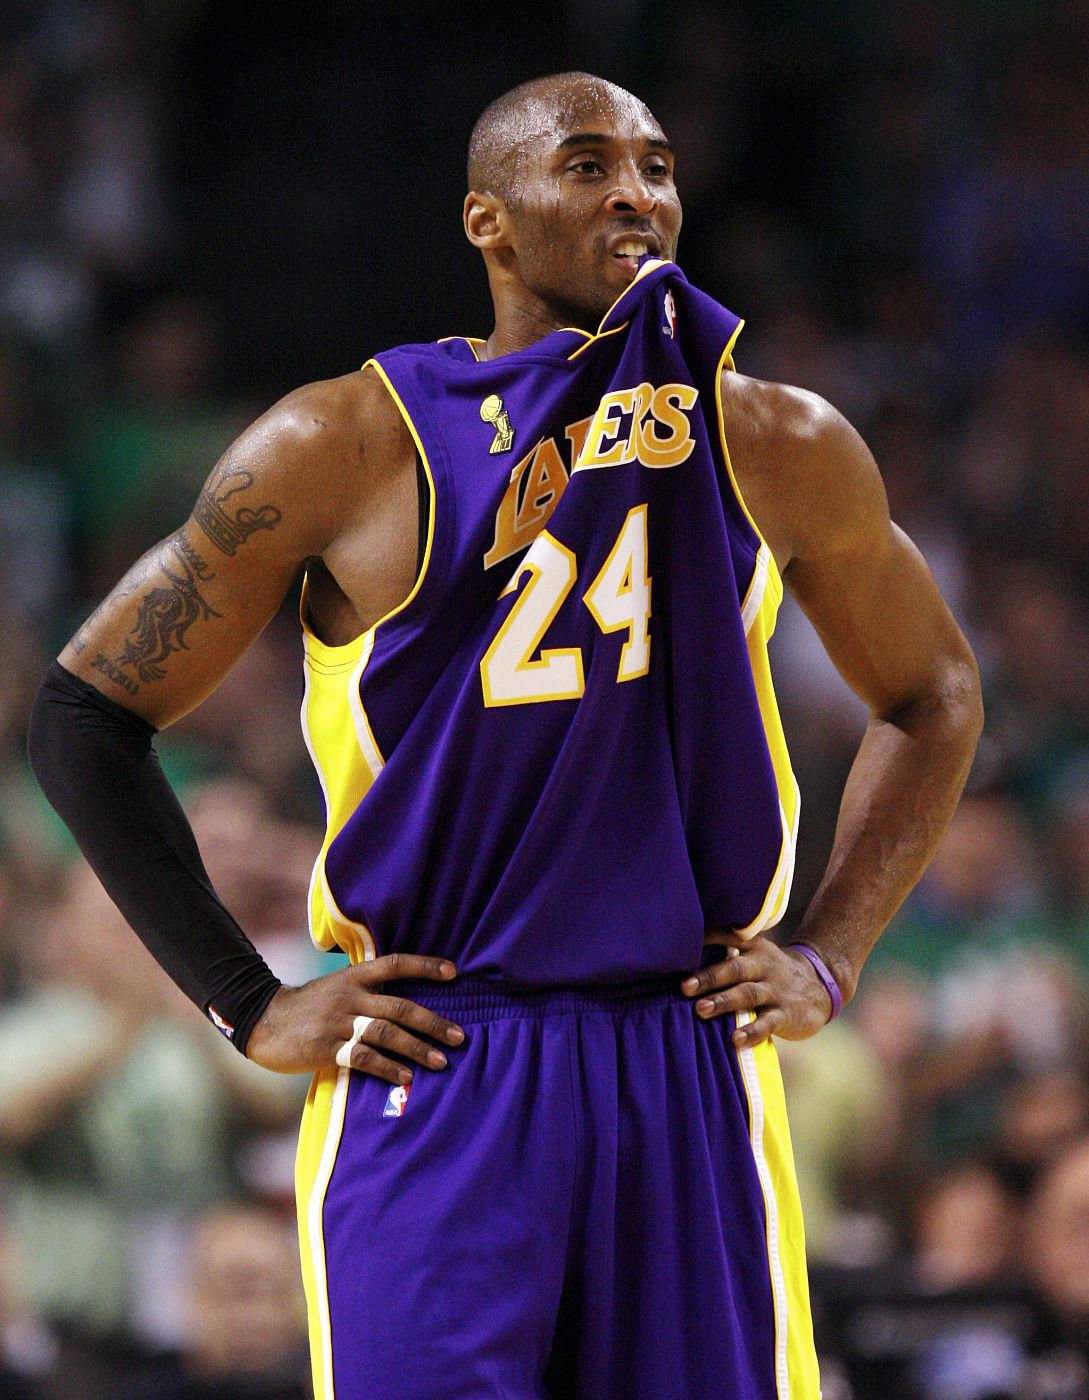 Kobe Bryant tendrá la oportunidad de desquitarse de su derrota en la final de la NBA, participando en los Juegos Olímpicos.